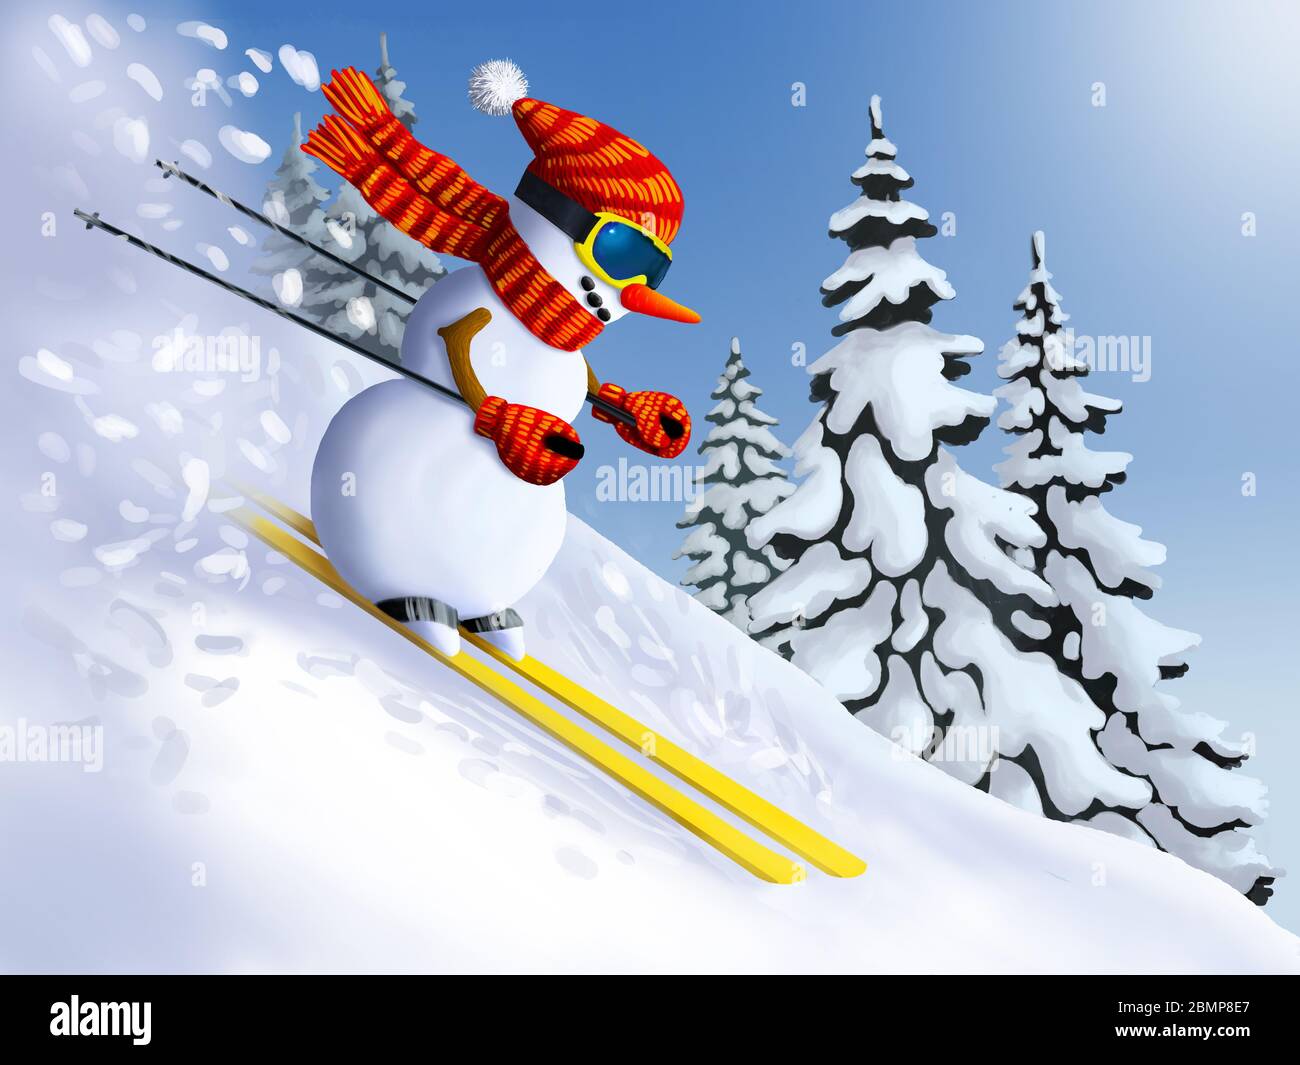 Bonhomme de neige skieur extrême de descente de la montagne. Vacances d'hiver Noël et nouvel an illustrations. Banque D'Images